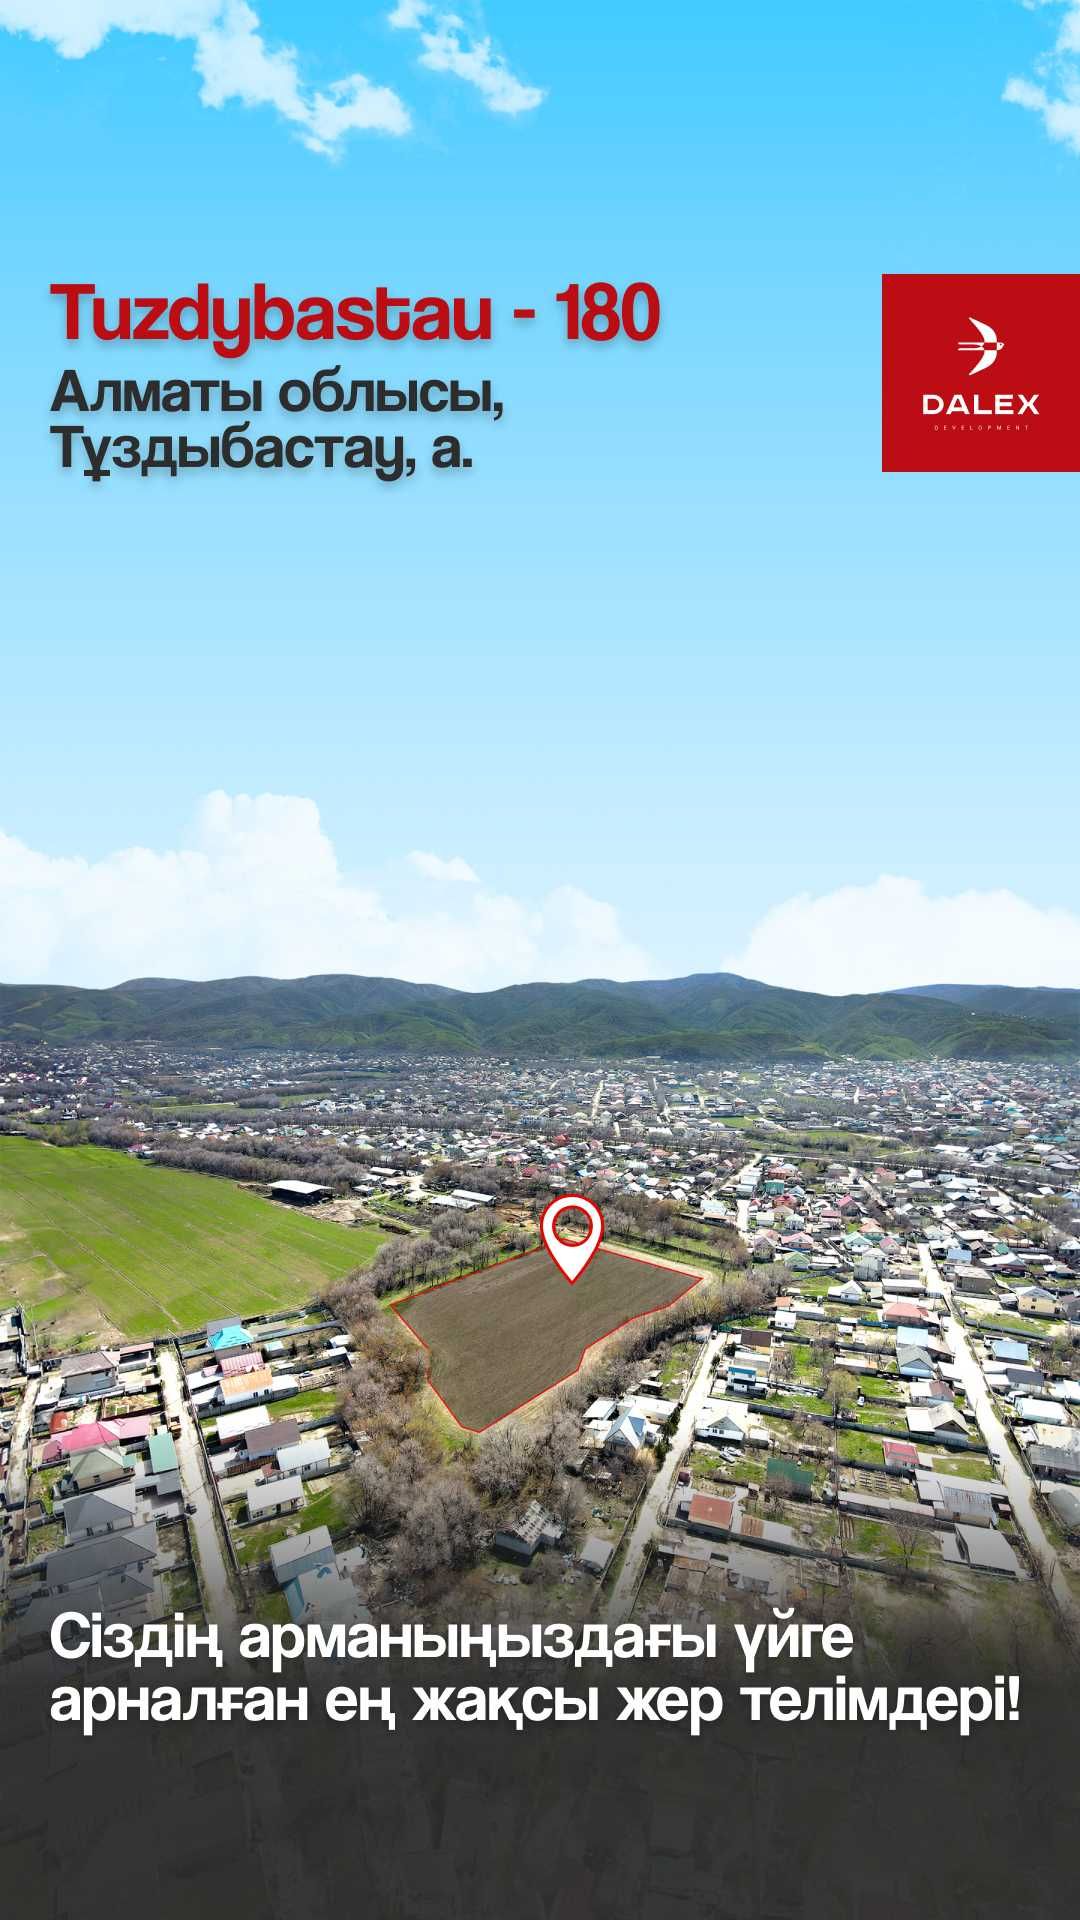 Участки в перспективном районе в Алматинской области